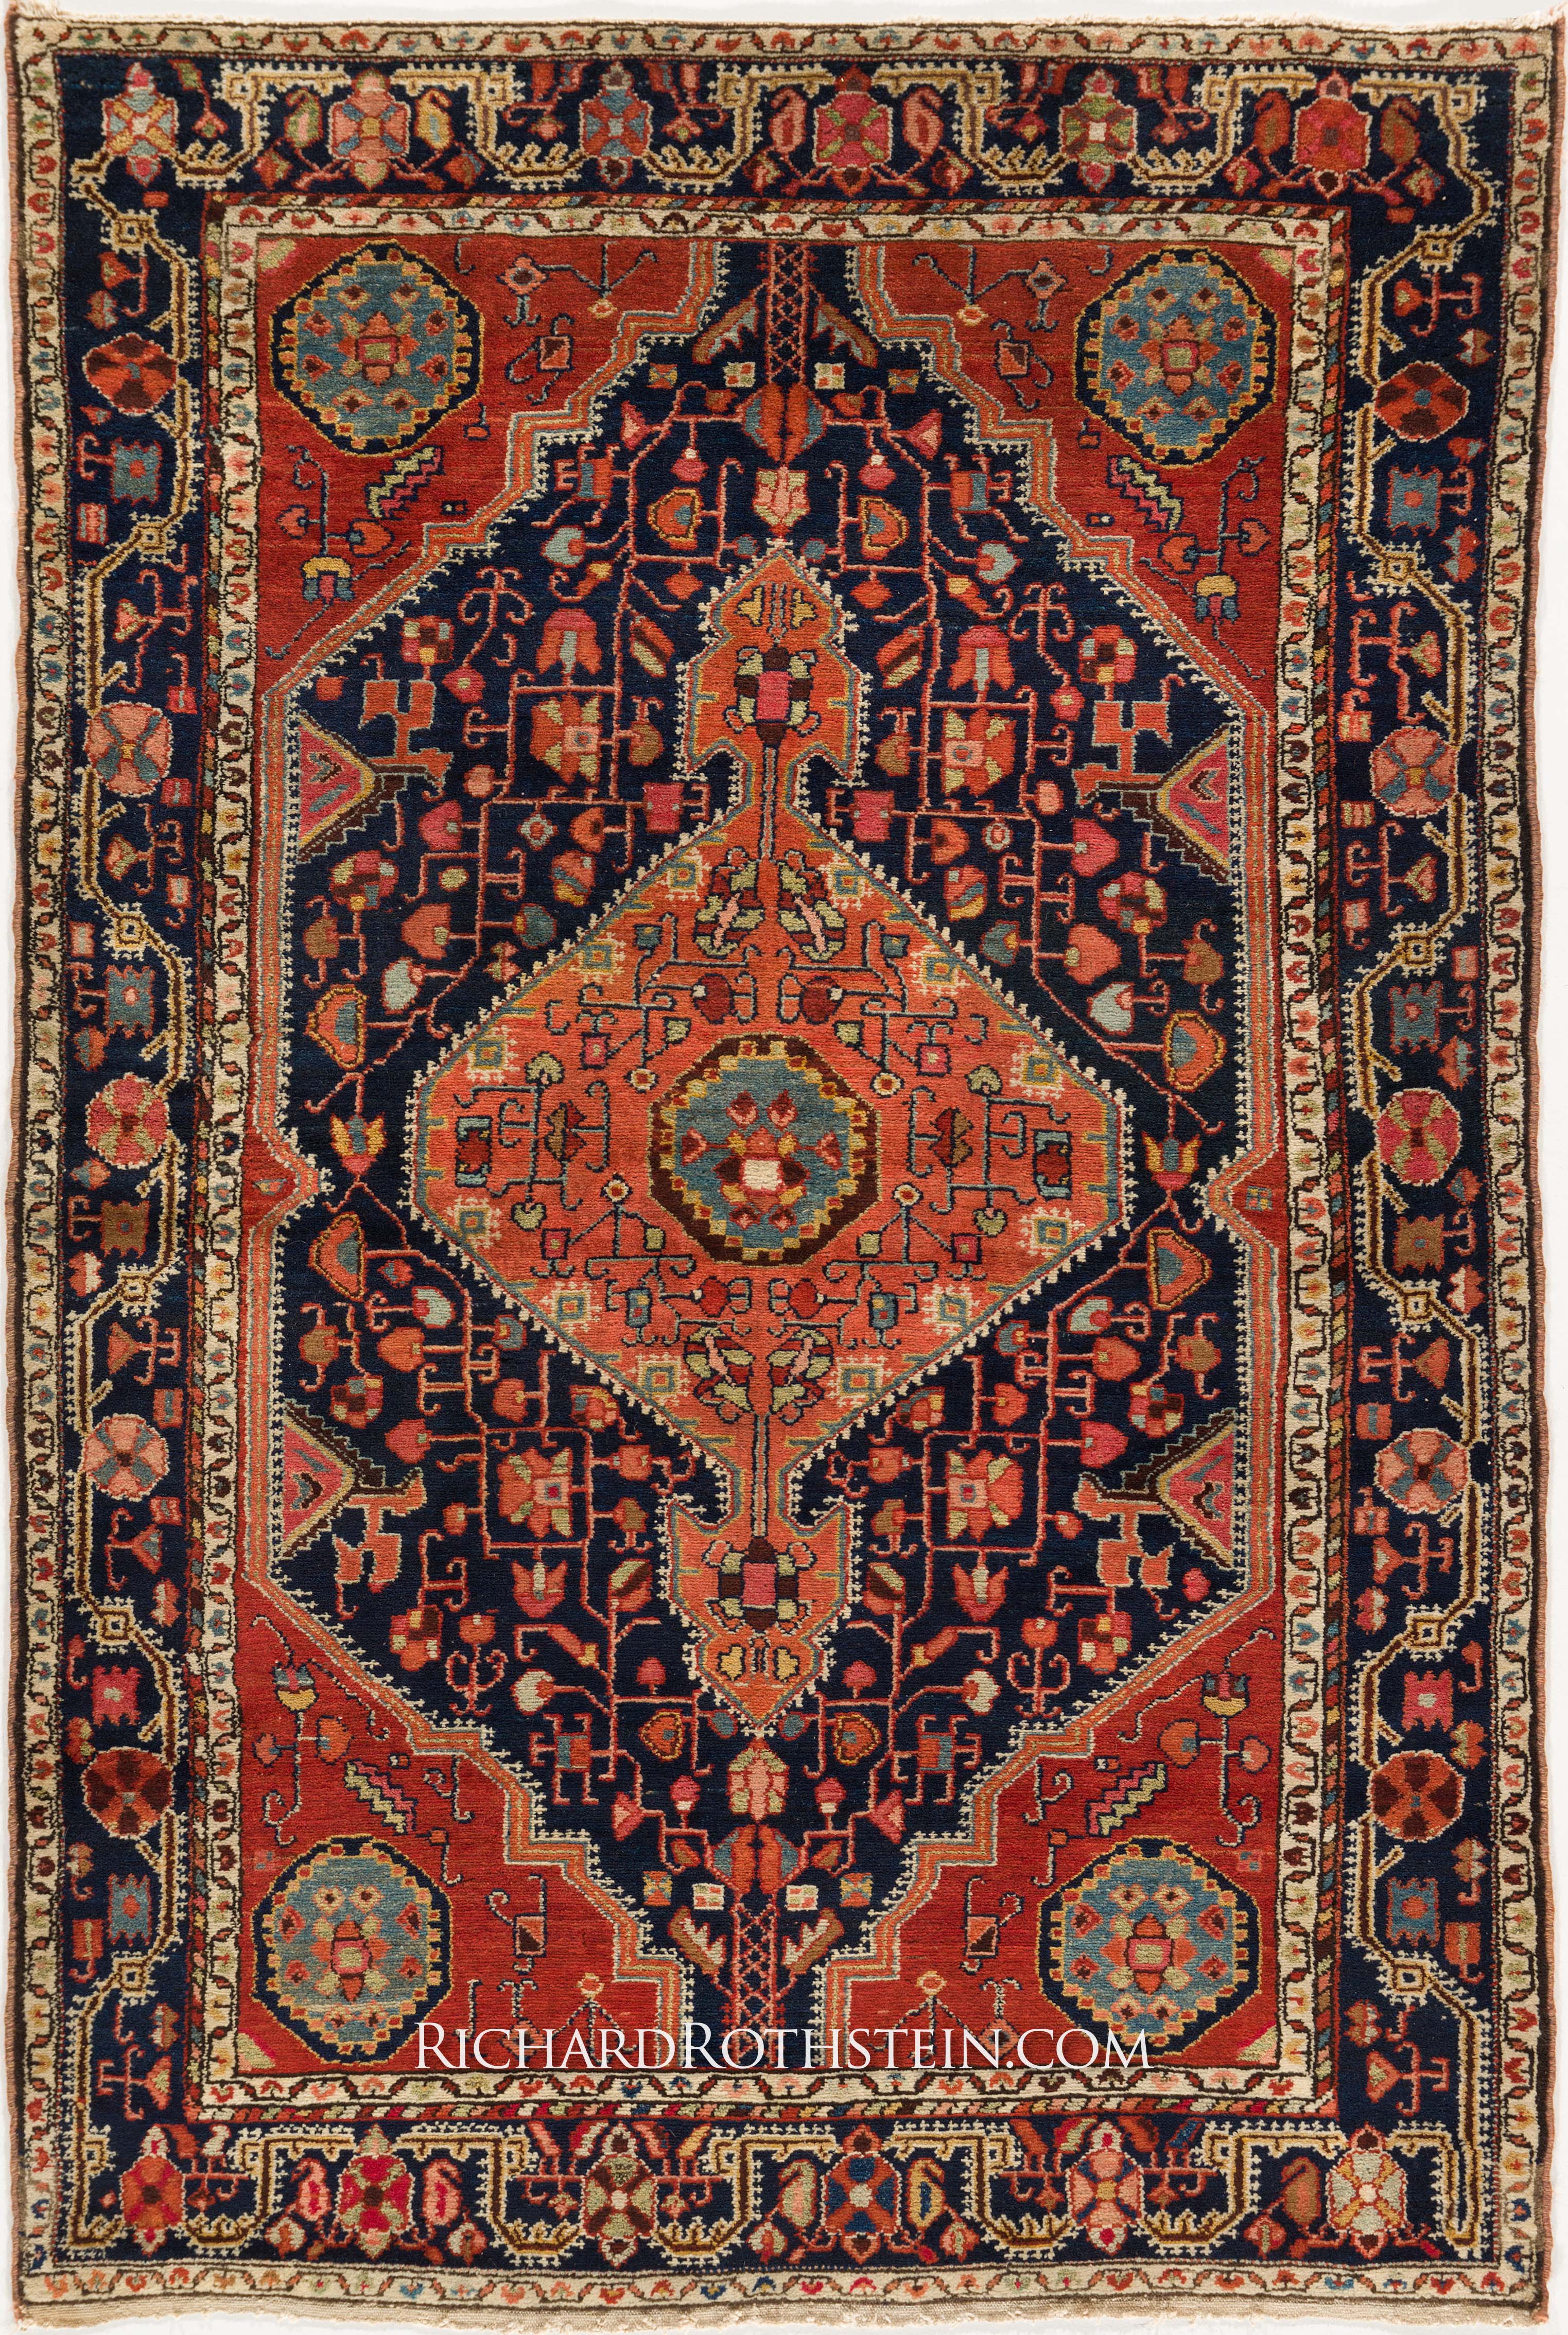 oriental rugs online oriental rugs where to buy persian rugs online living room furnishing KNGFPCU